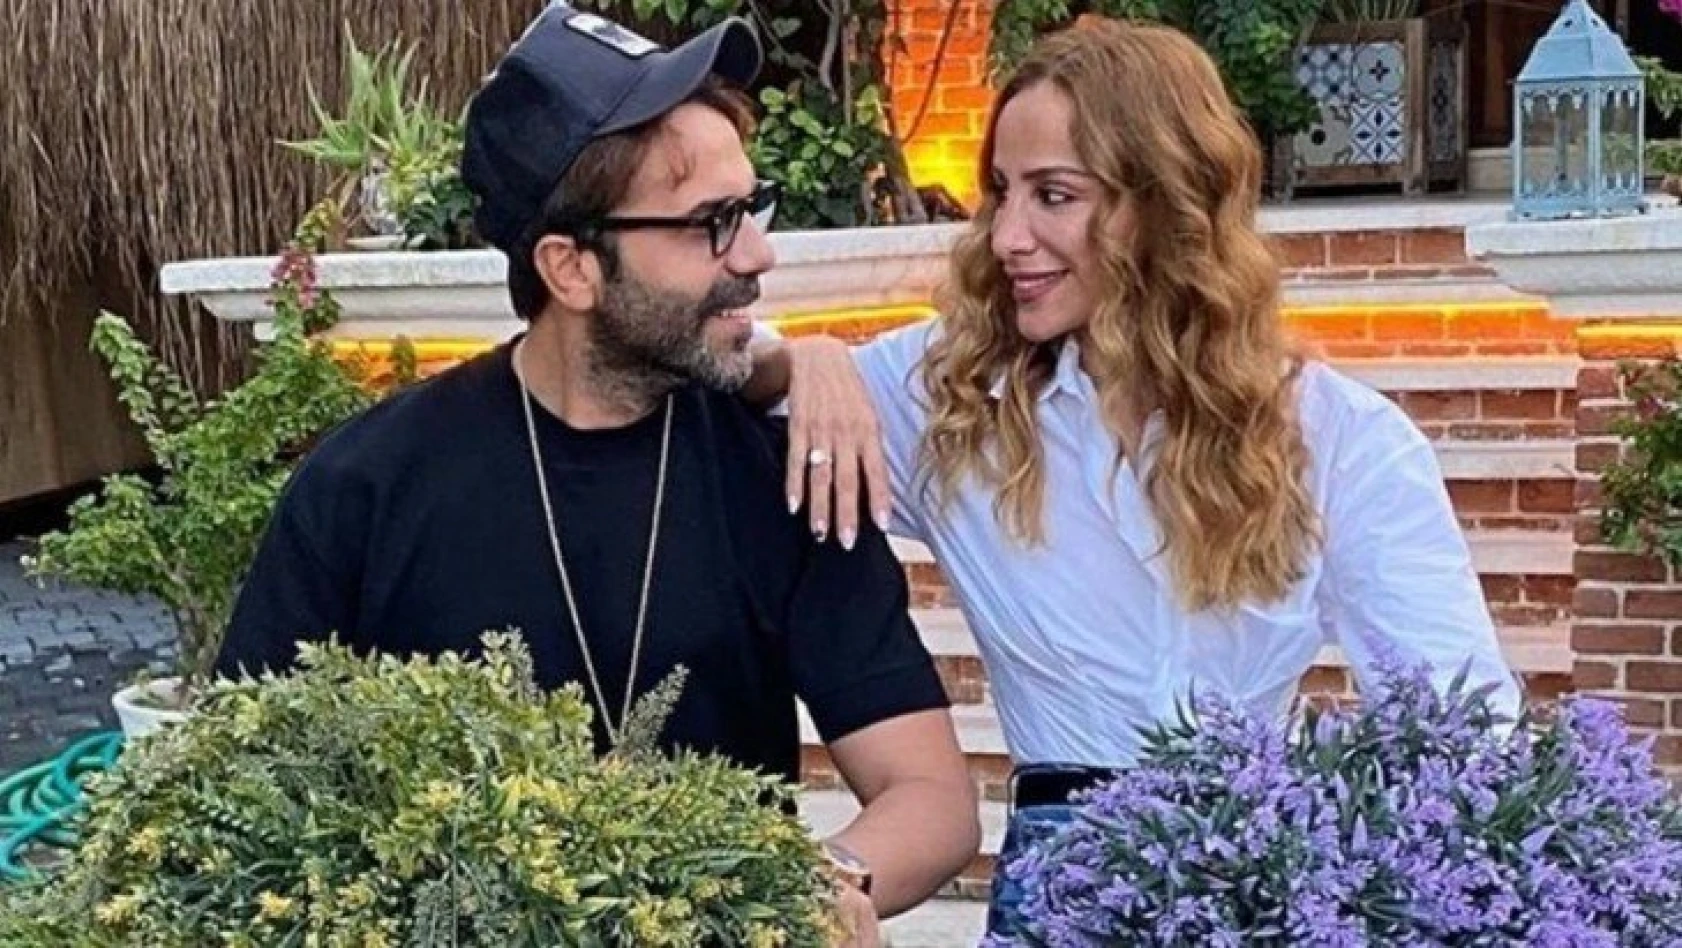 Fatma Toptaş ile Gürkan Topçu evleniyor